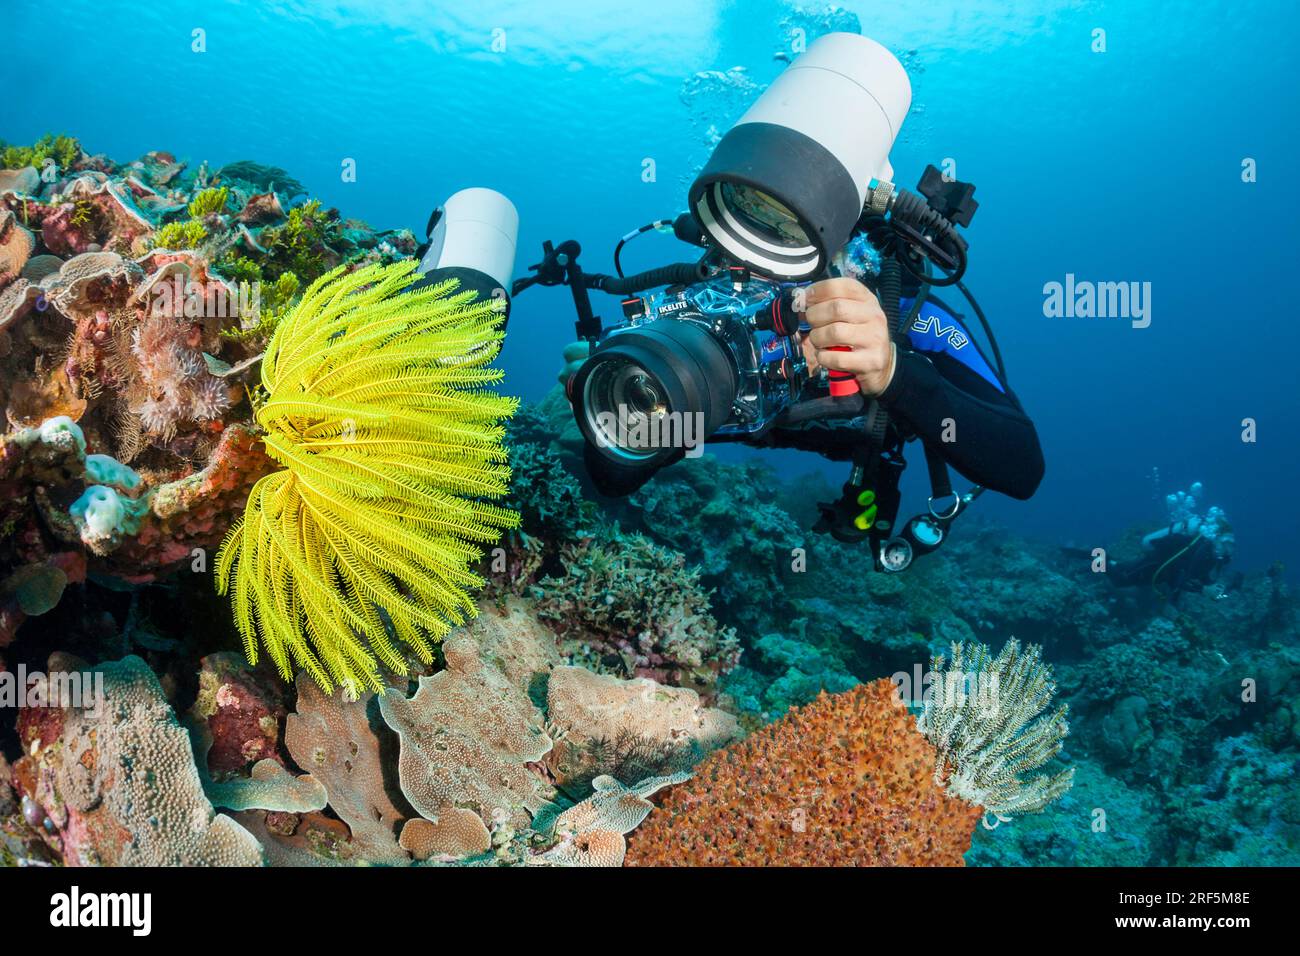 Ein Taucher, der eine digitale Spiegelreflexkamera aufnimmt, stellt sich auf einem indonesischen Riff auf einen Krinoiden, Oxycomanthus bennetti, auch Seerosen oder Federstern genannt. Stockfoto